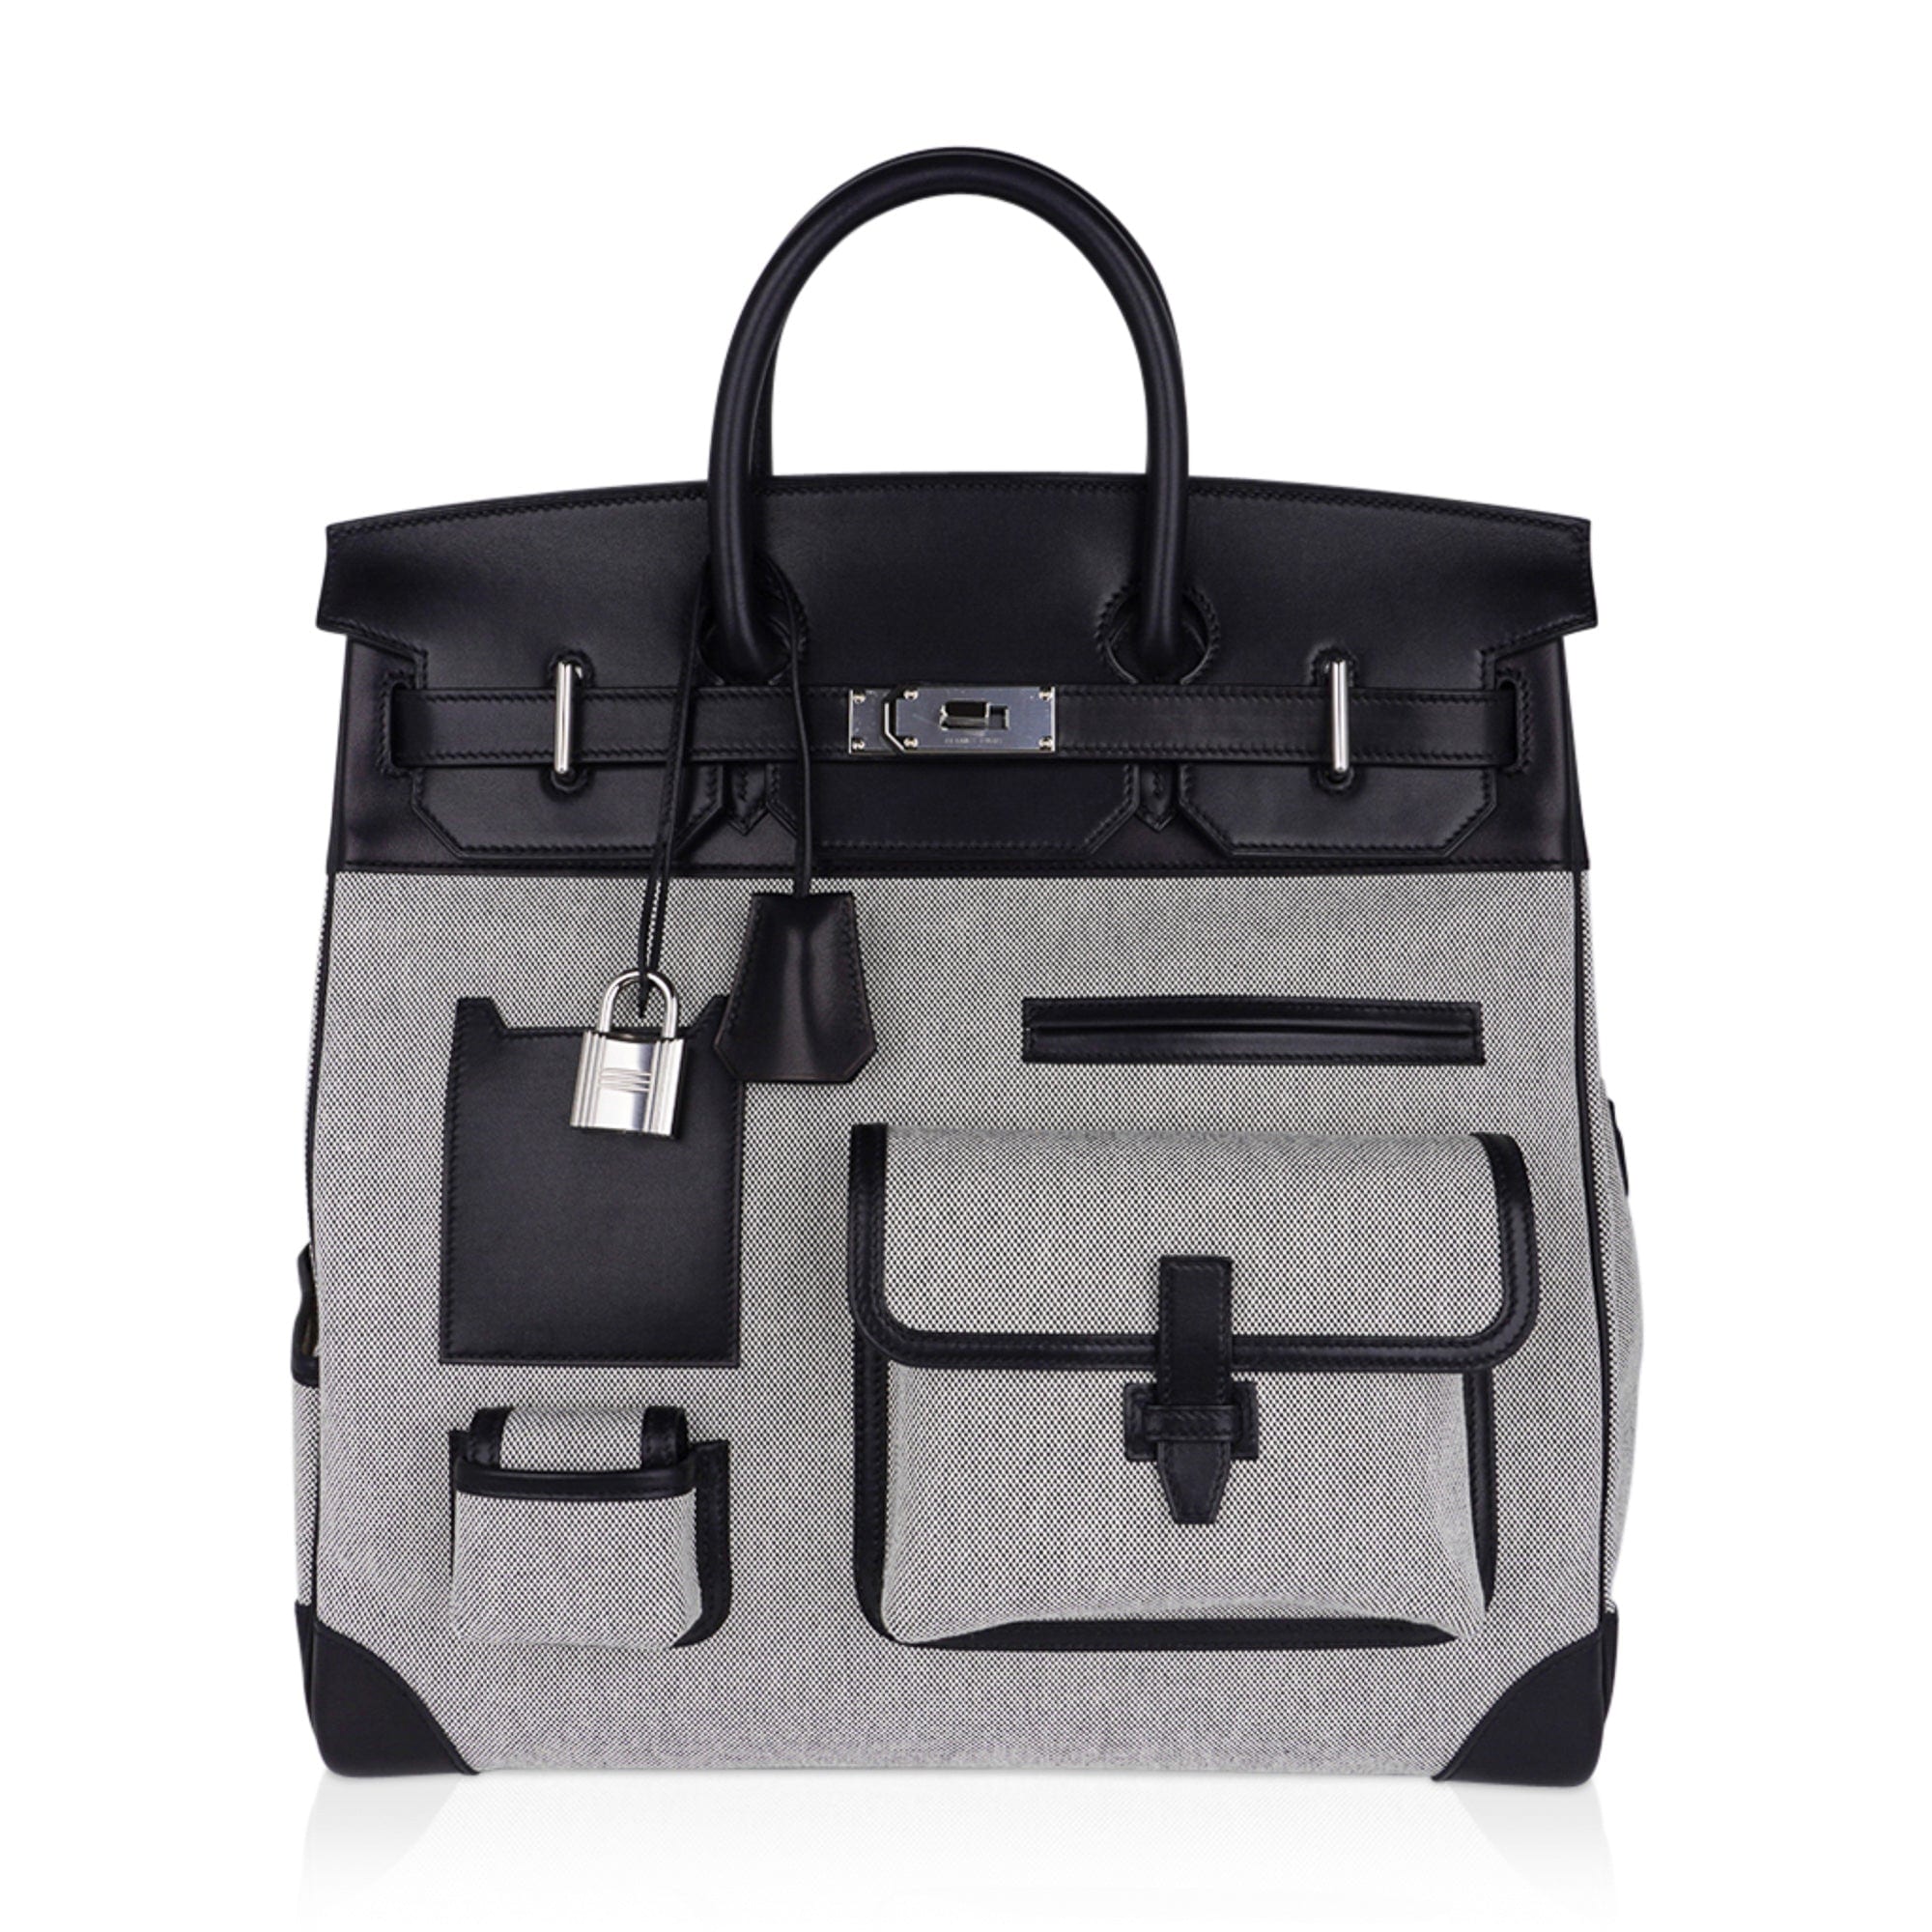 Hermes Hac Bag Versus Birkin Bag